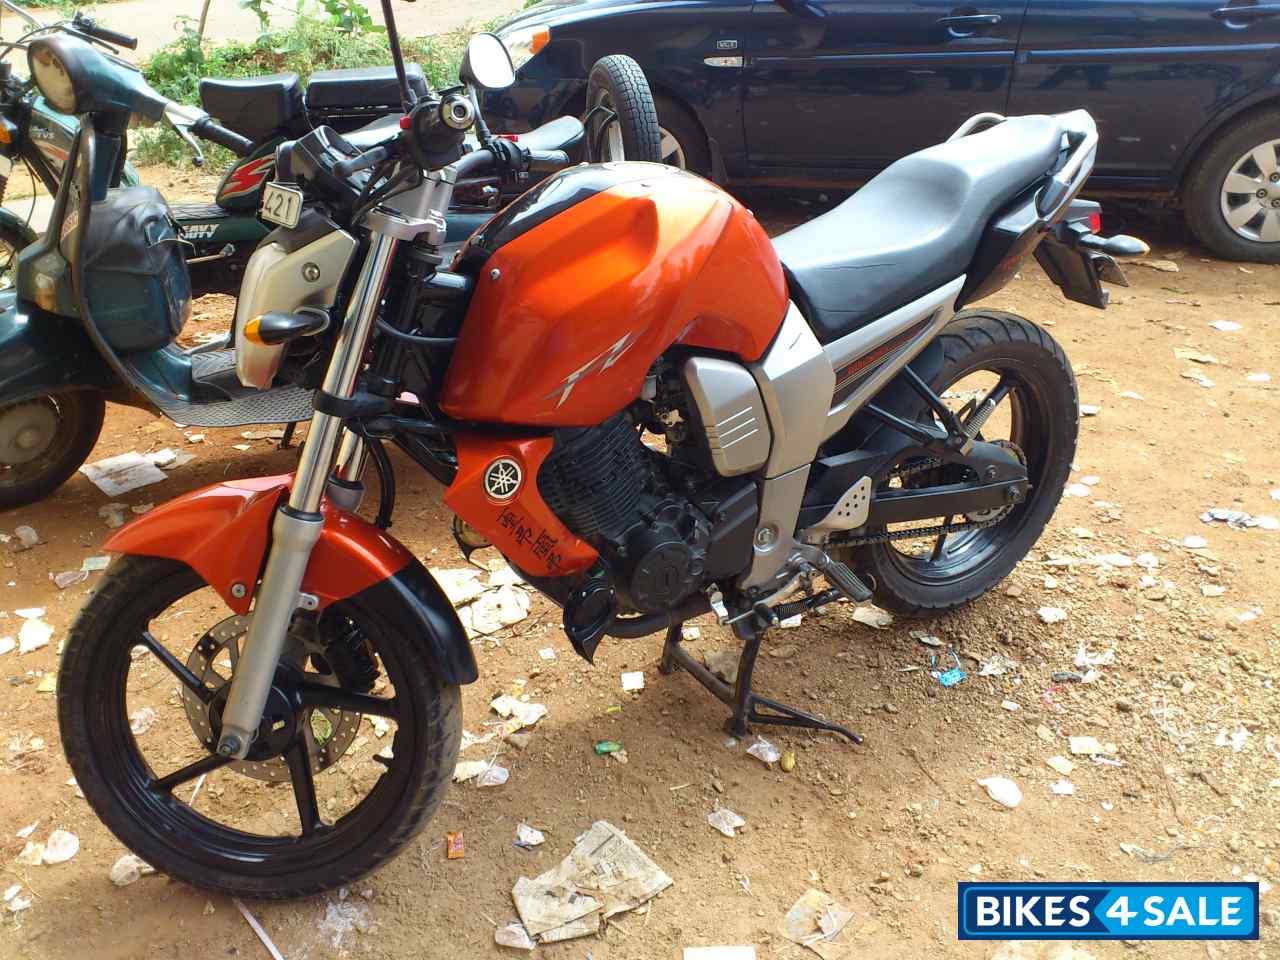 Used 2009 model Yamaha FZ16 for sale in Bangalore. ID 58003. Orange ...